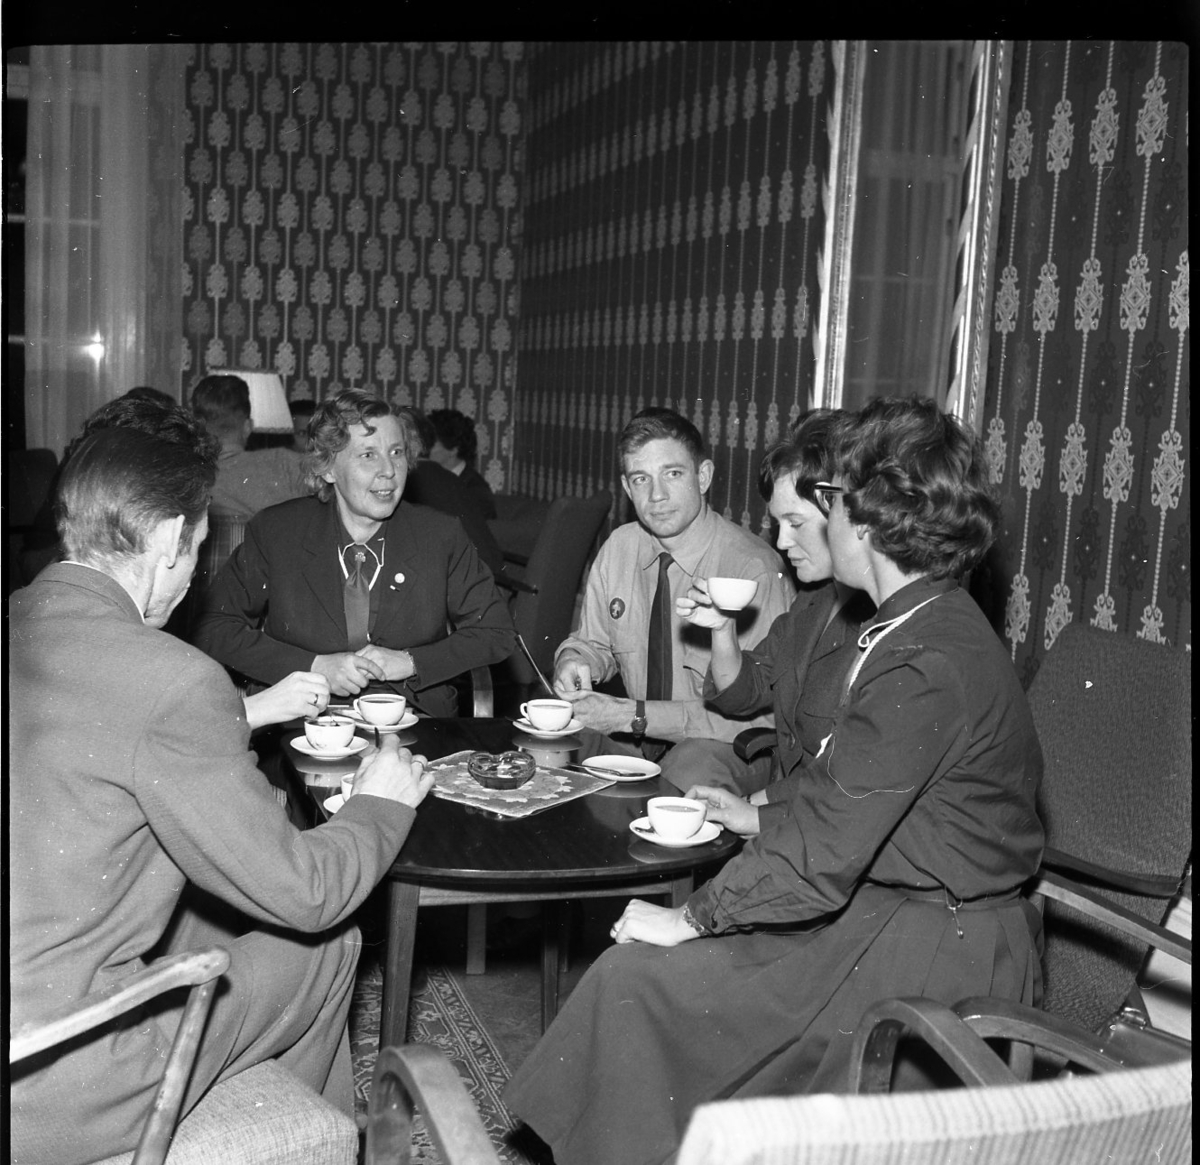 Män och kvinnor, några i scoutdräkt, sitter i grupper runt bord med kaffekoppar.